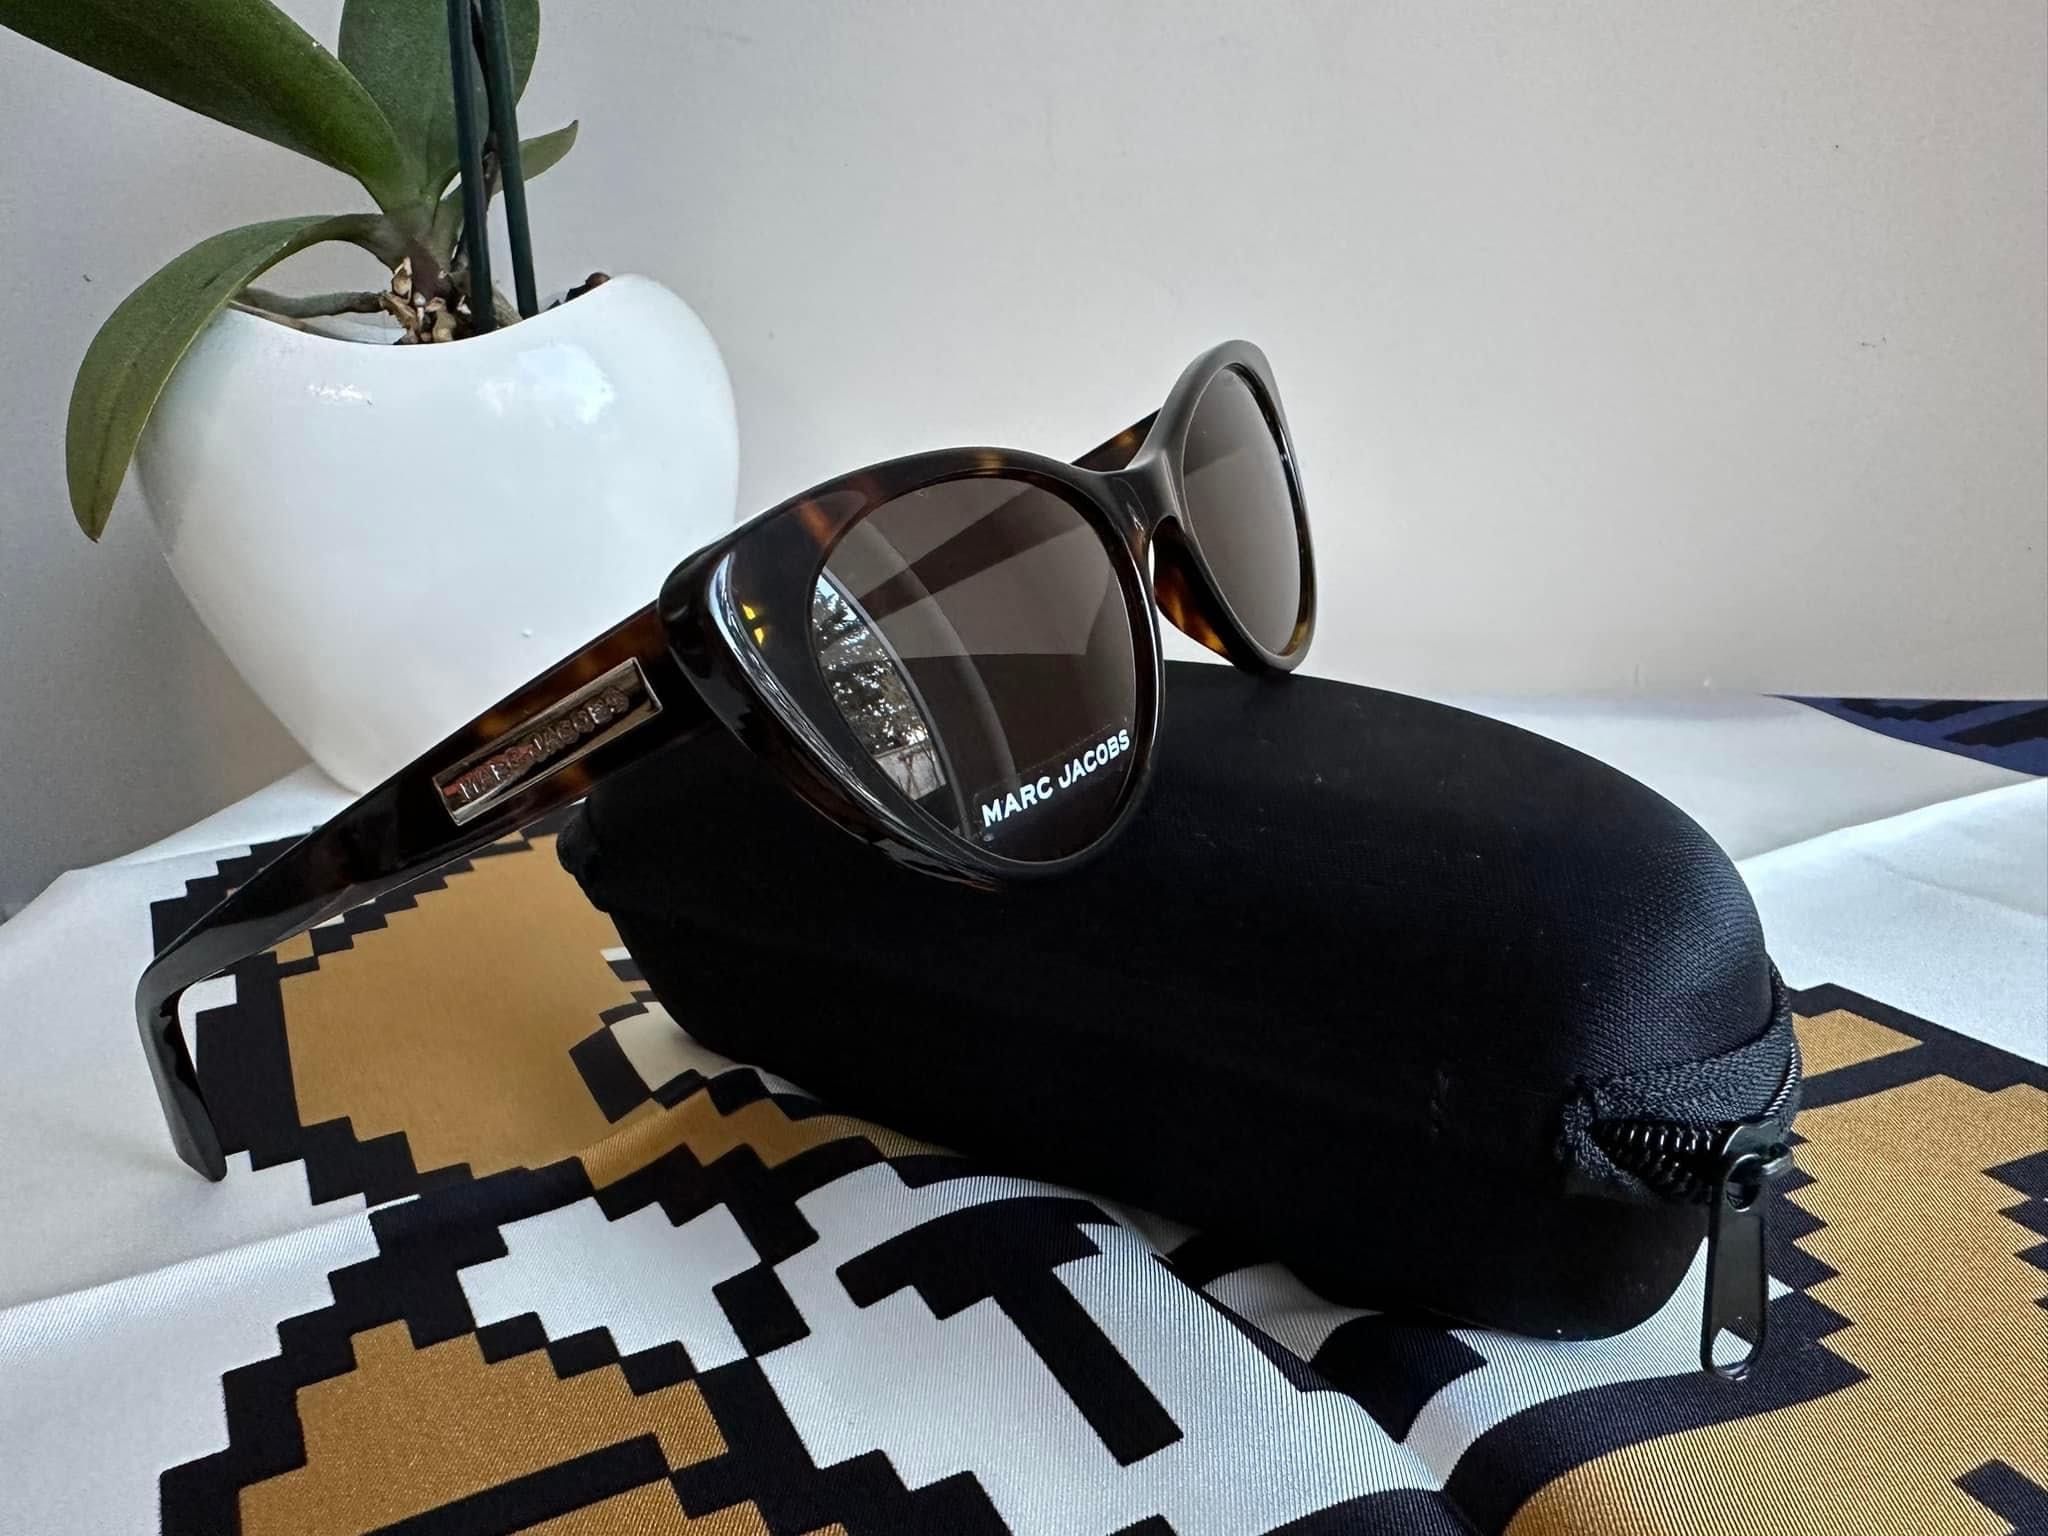 НОВИ Слънчеви очила Marc Jacobs